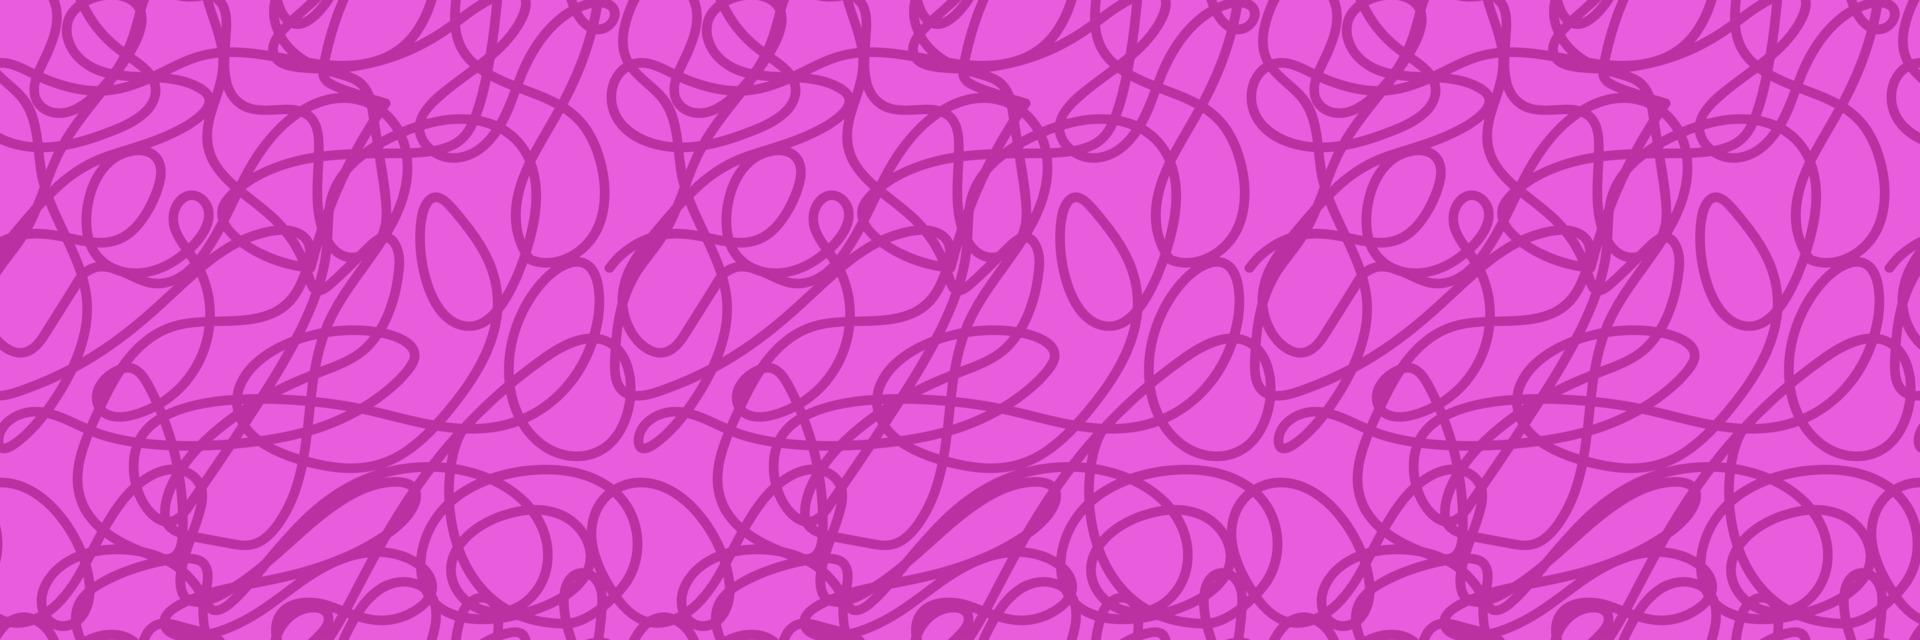 fondo de pantalla de una línea. dibujado a mano líneas onduladas de patrones sin fisuras vector